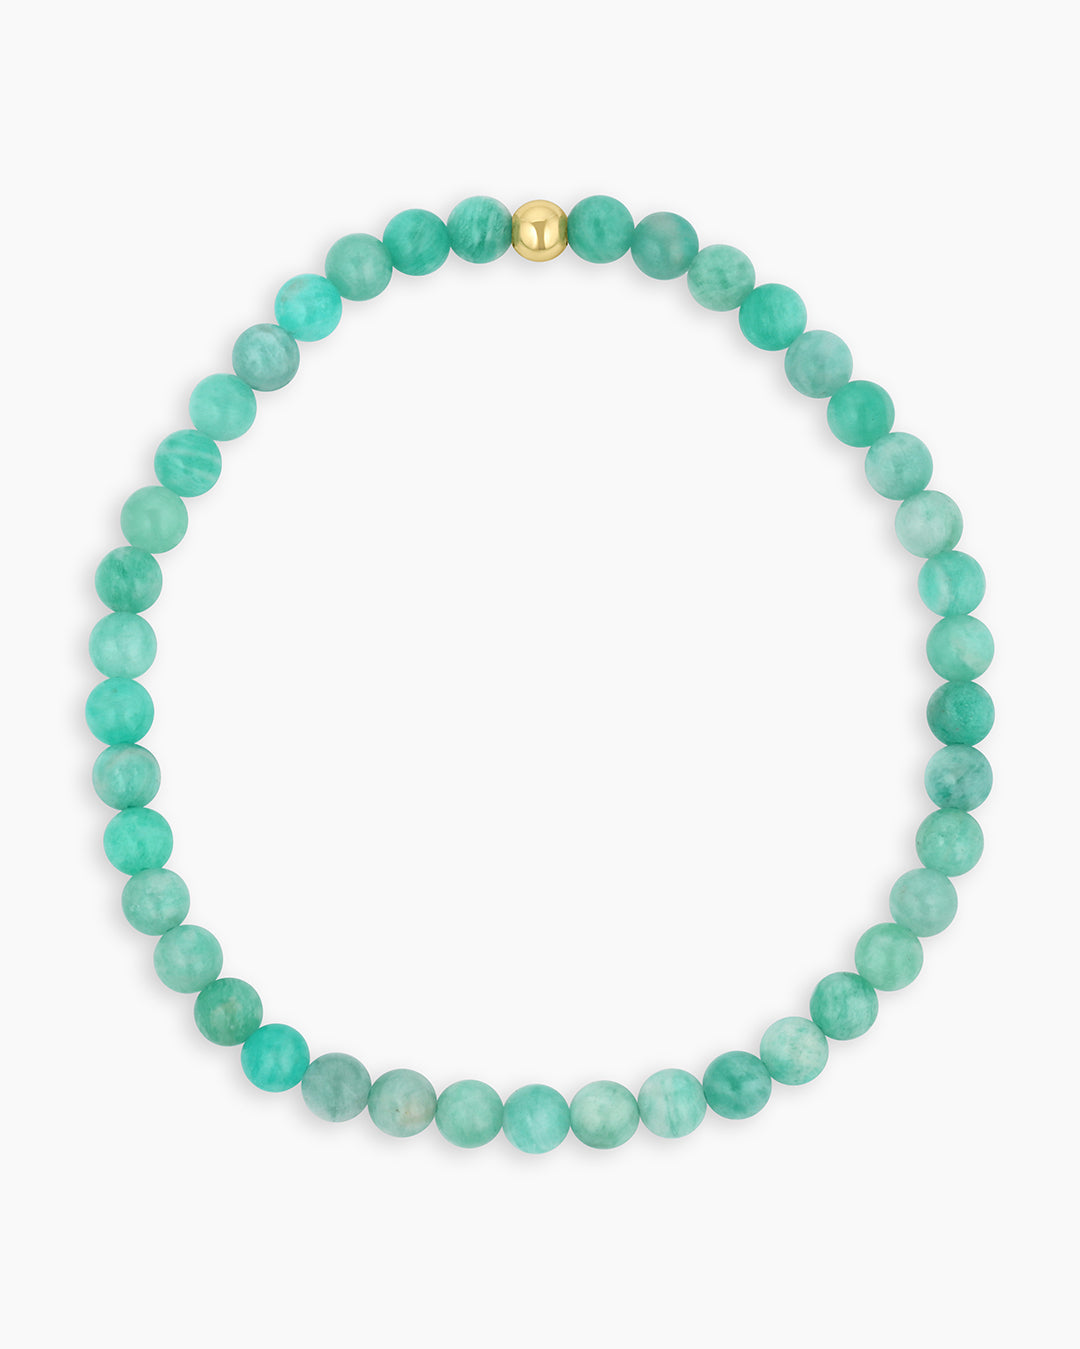 Carter Gemstone Bracelet || option::Gold Plated, Blue Amazonite